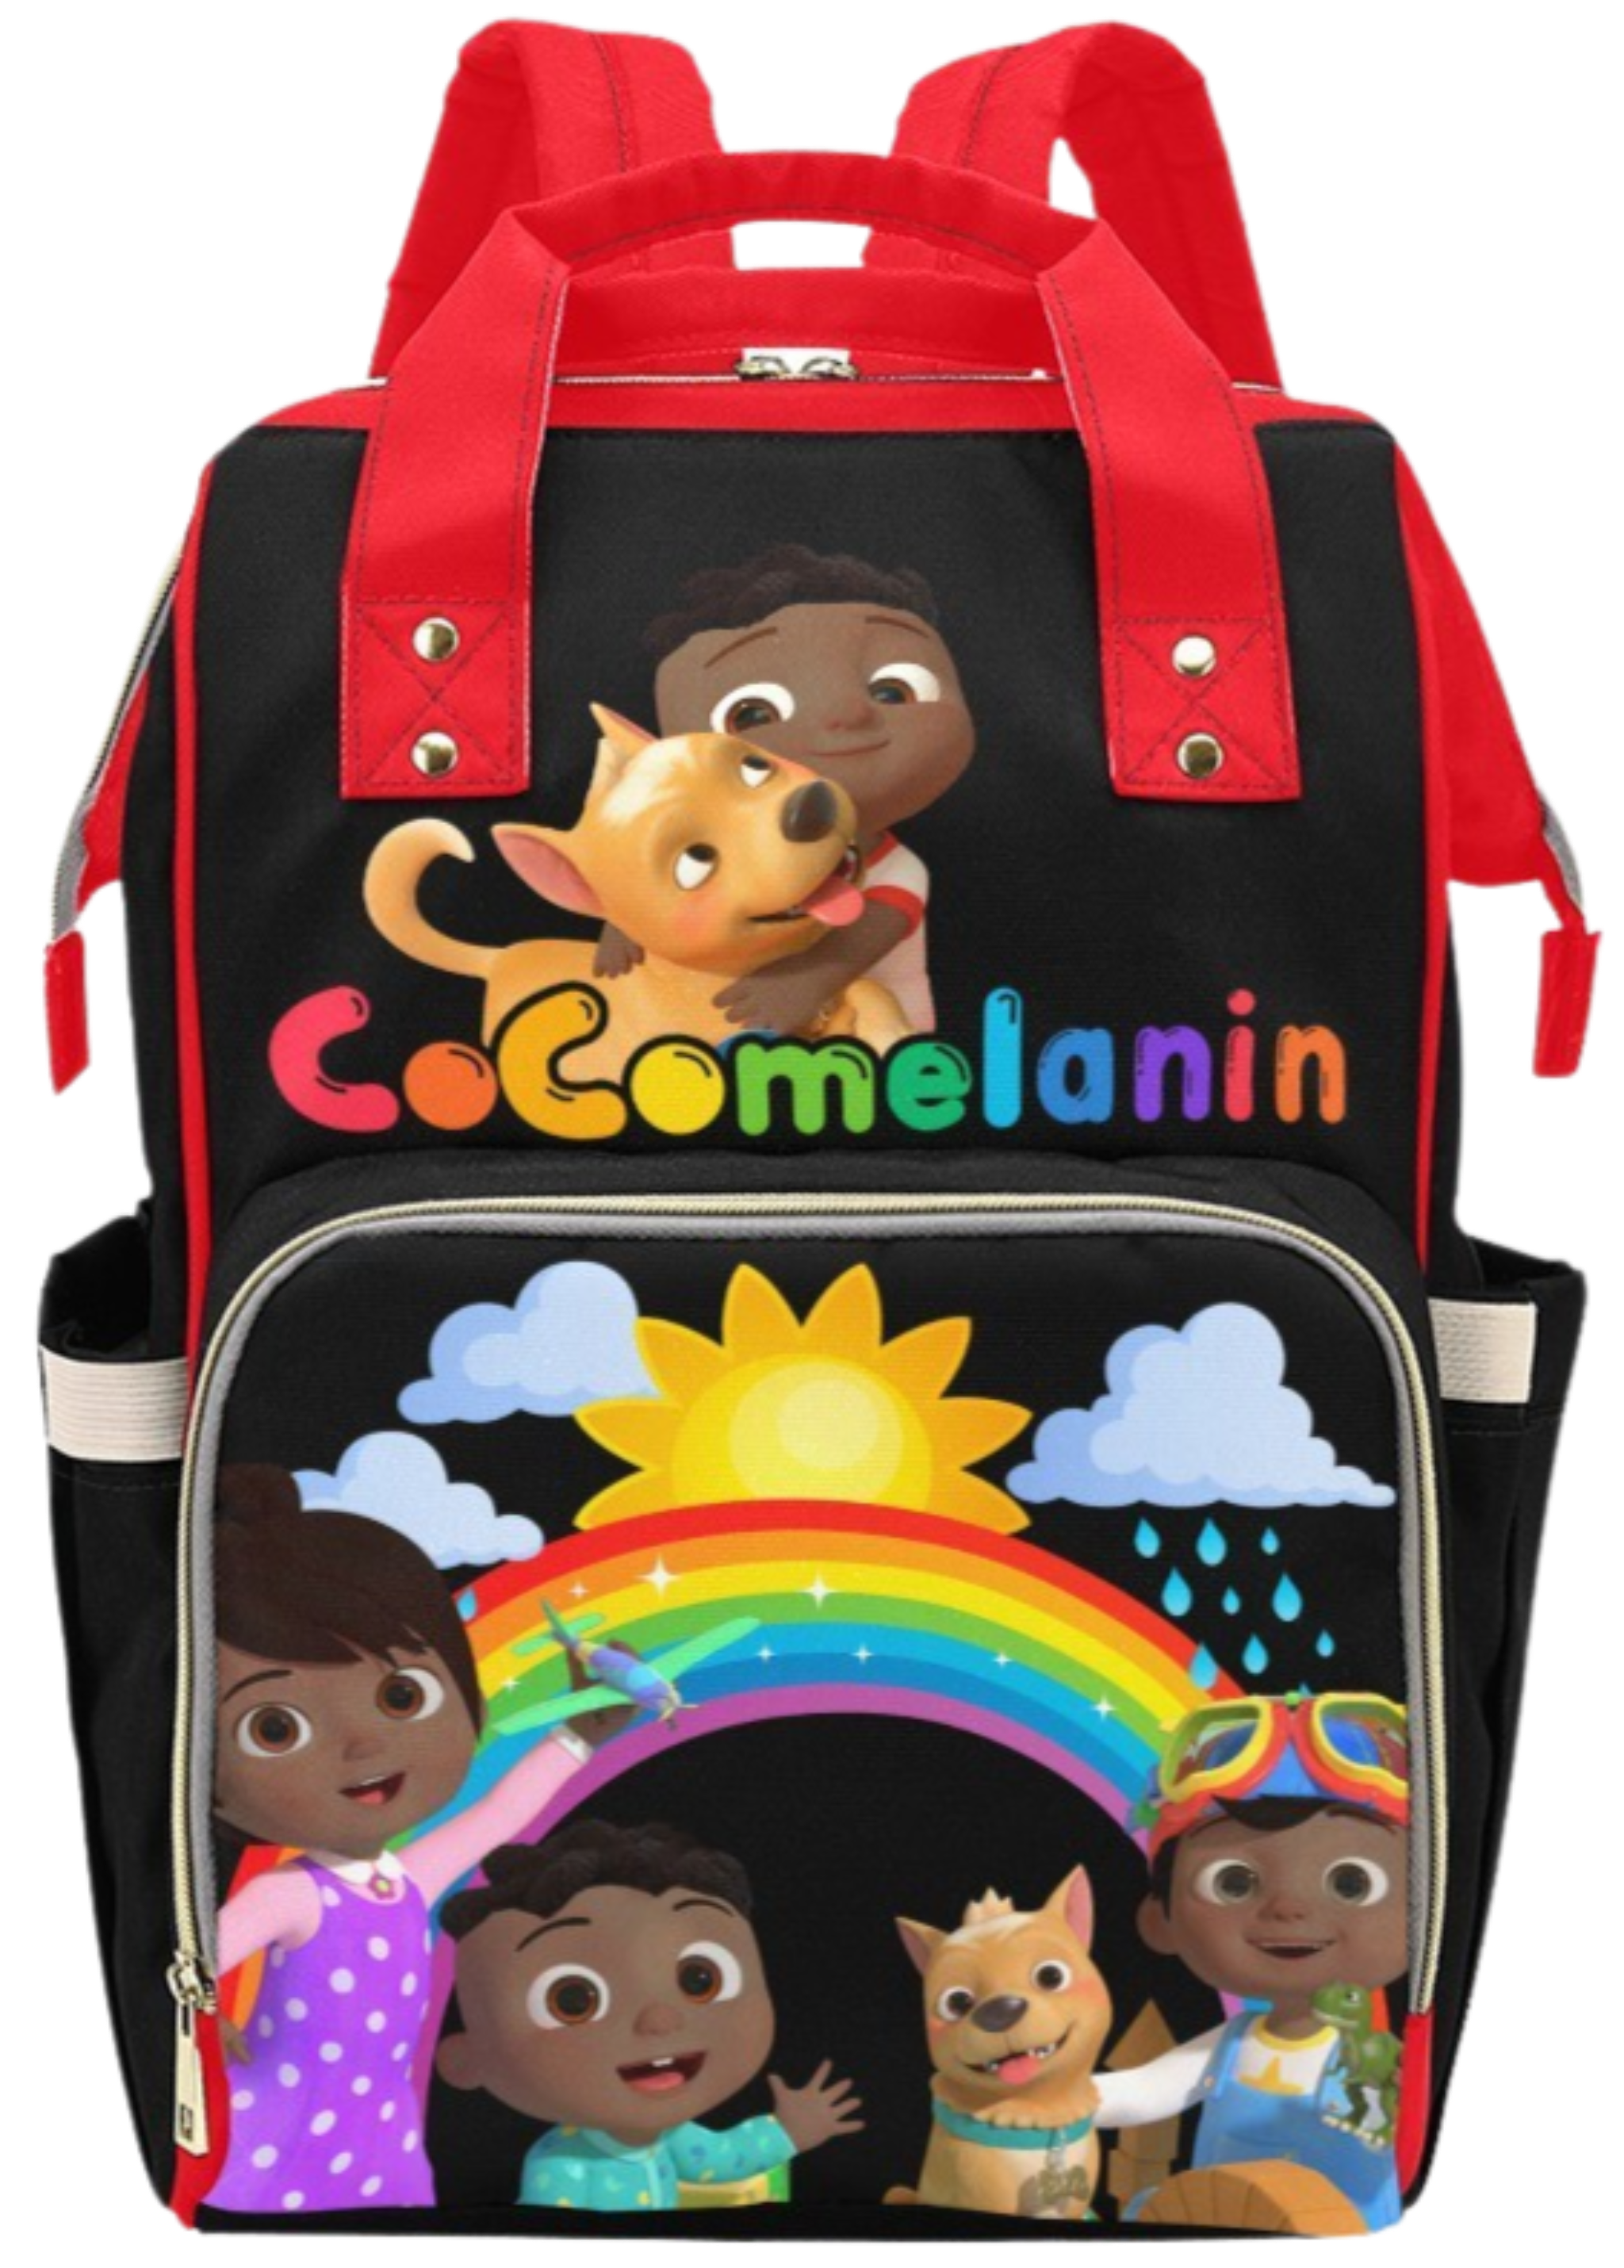 CoComelanin Diaper Bag